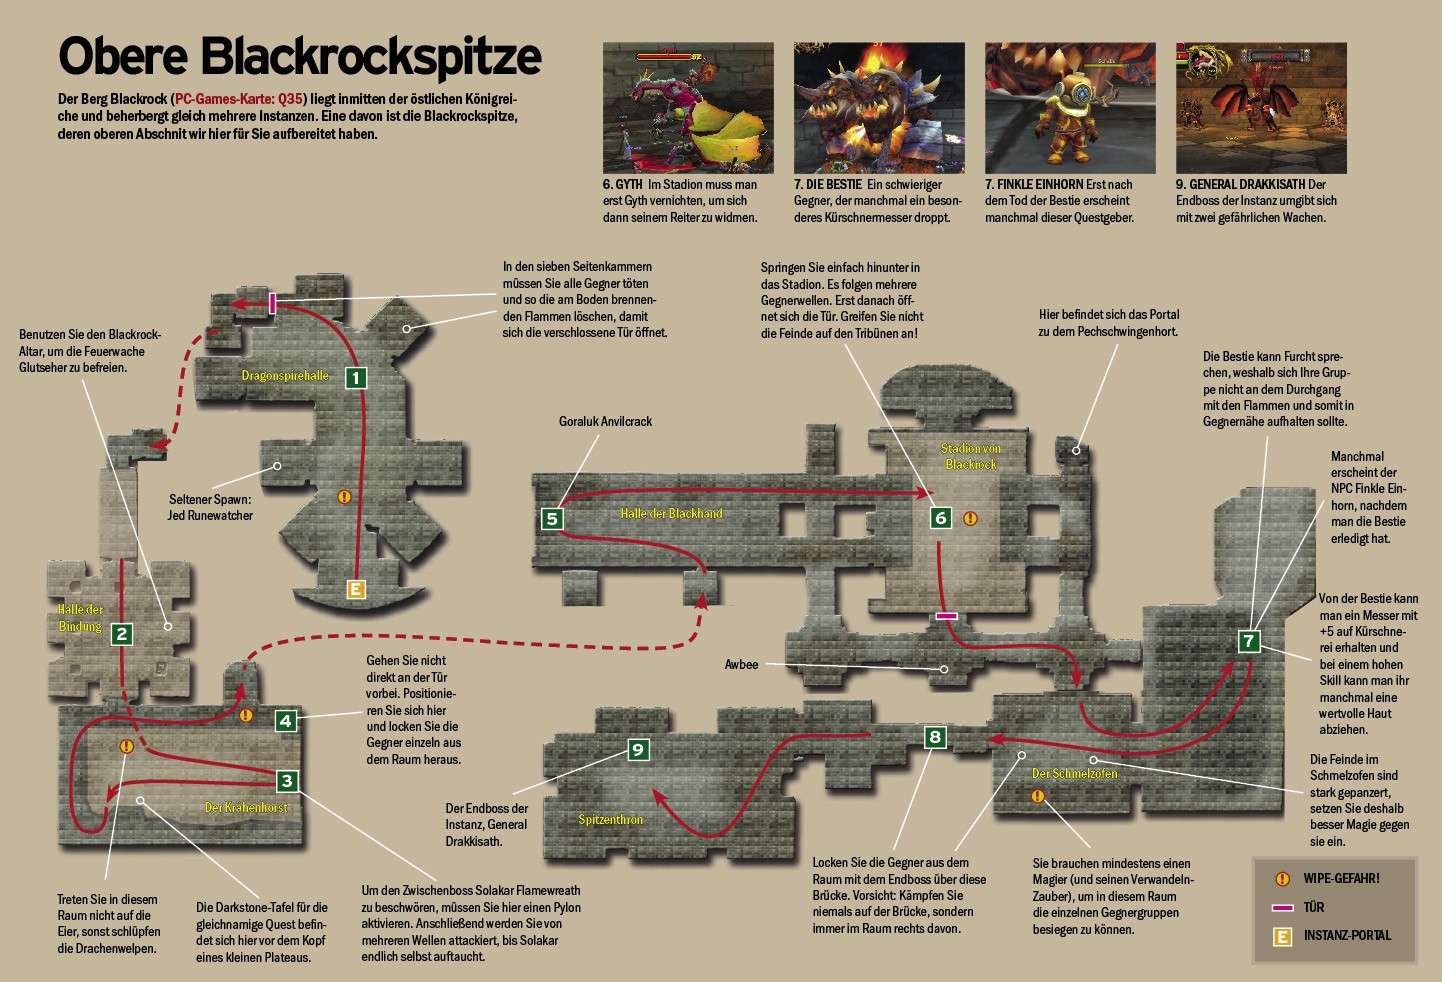 Die obere Blackrockspitze Map-ub10